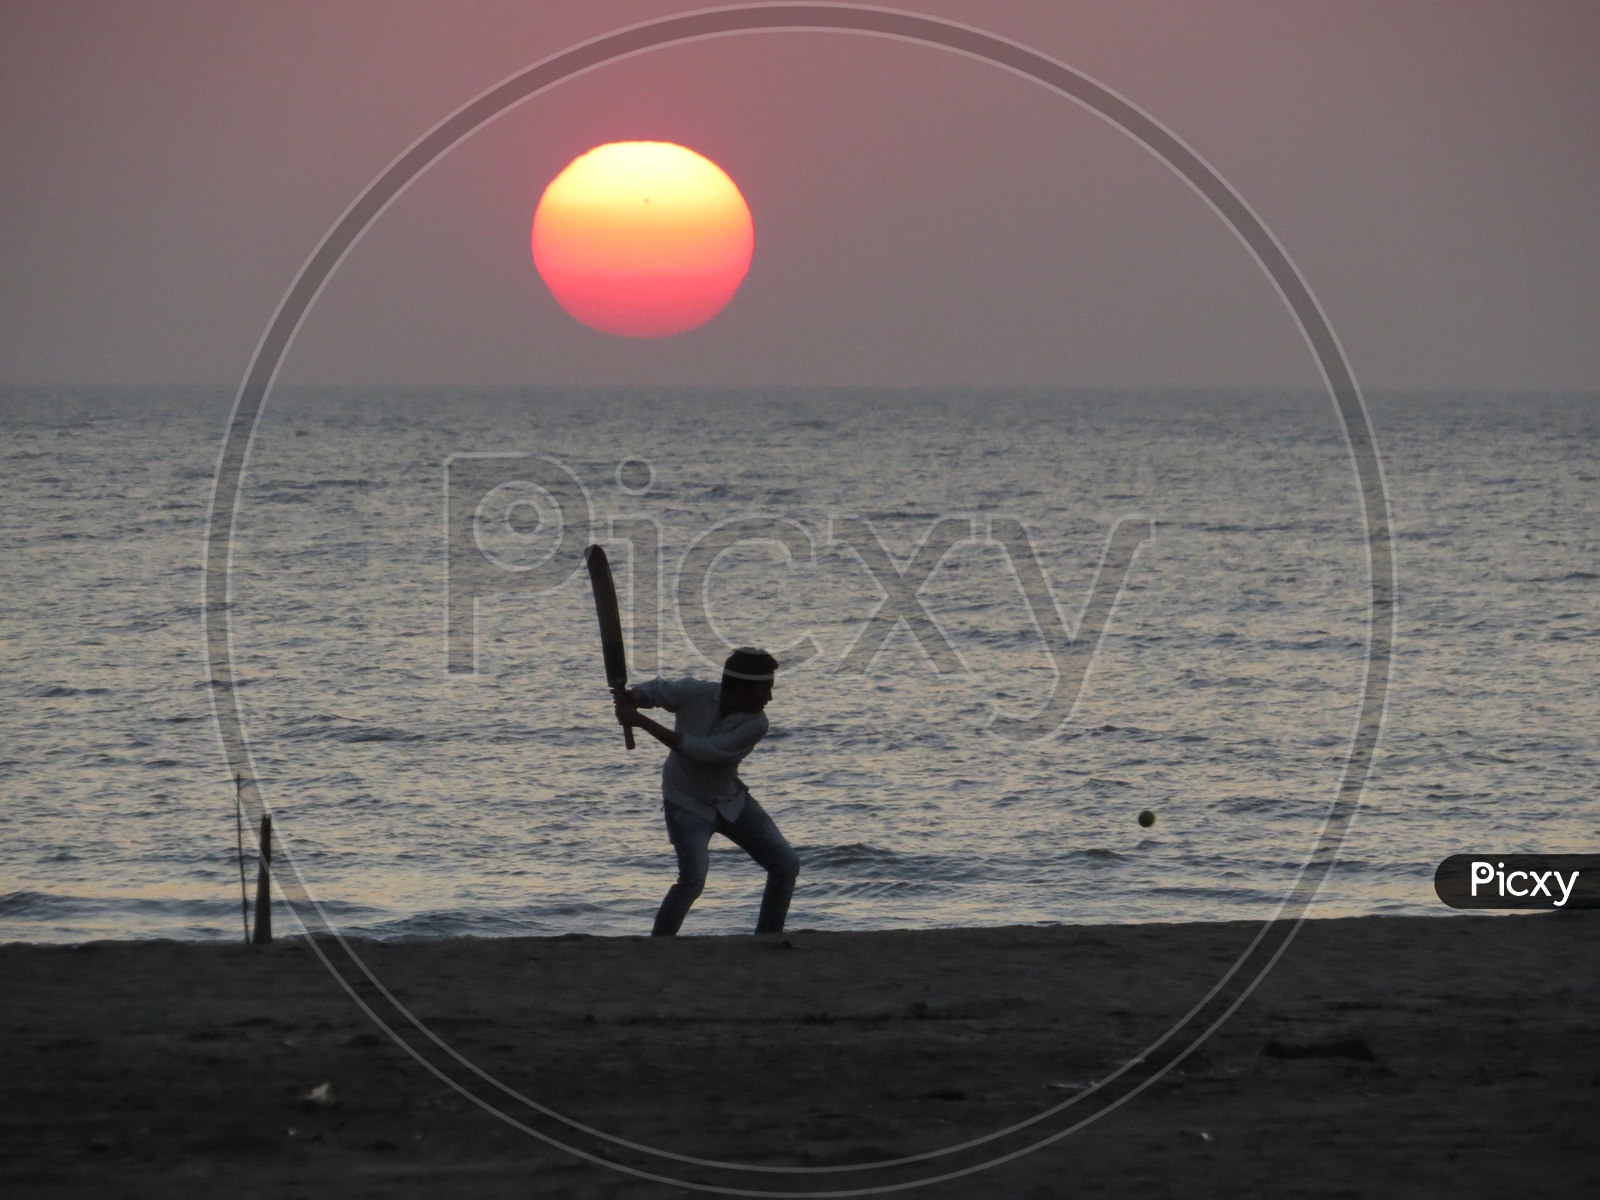 Cricket on the beach